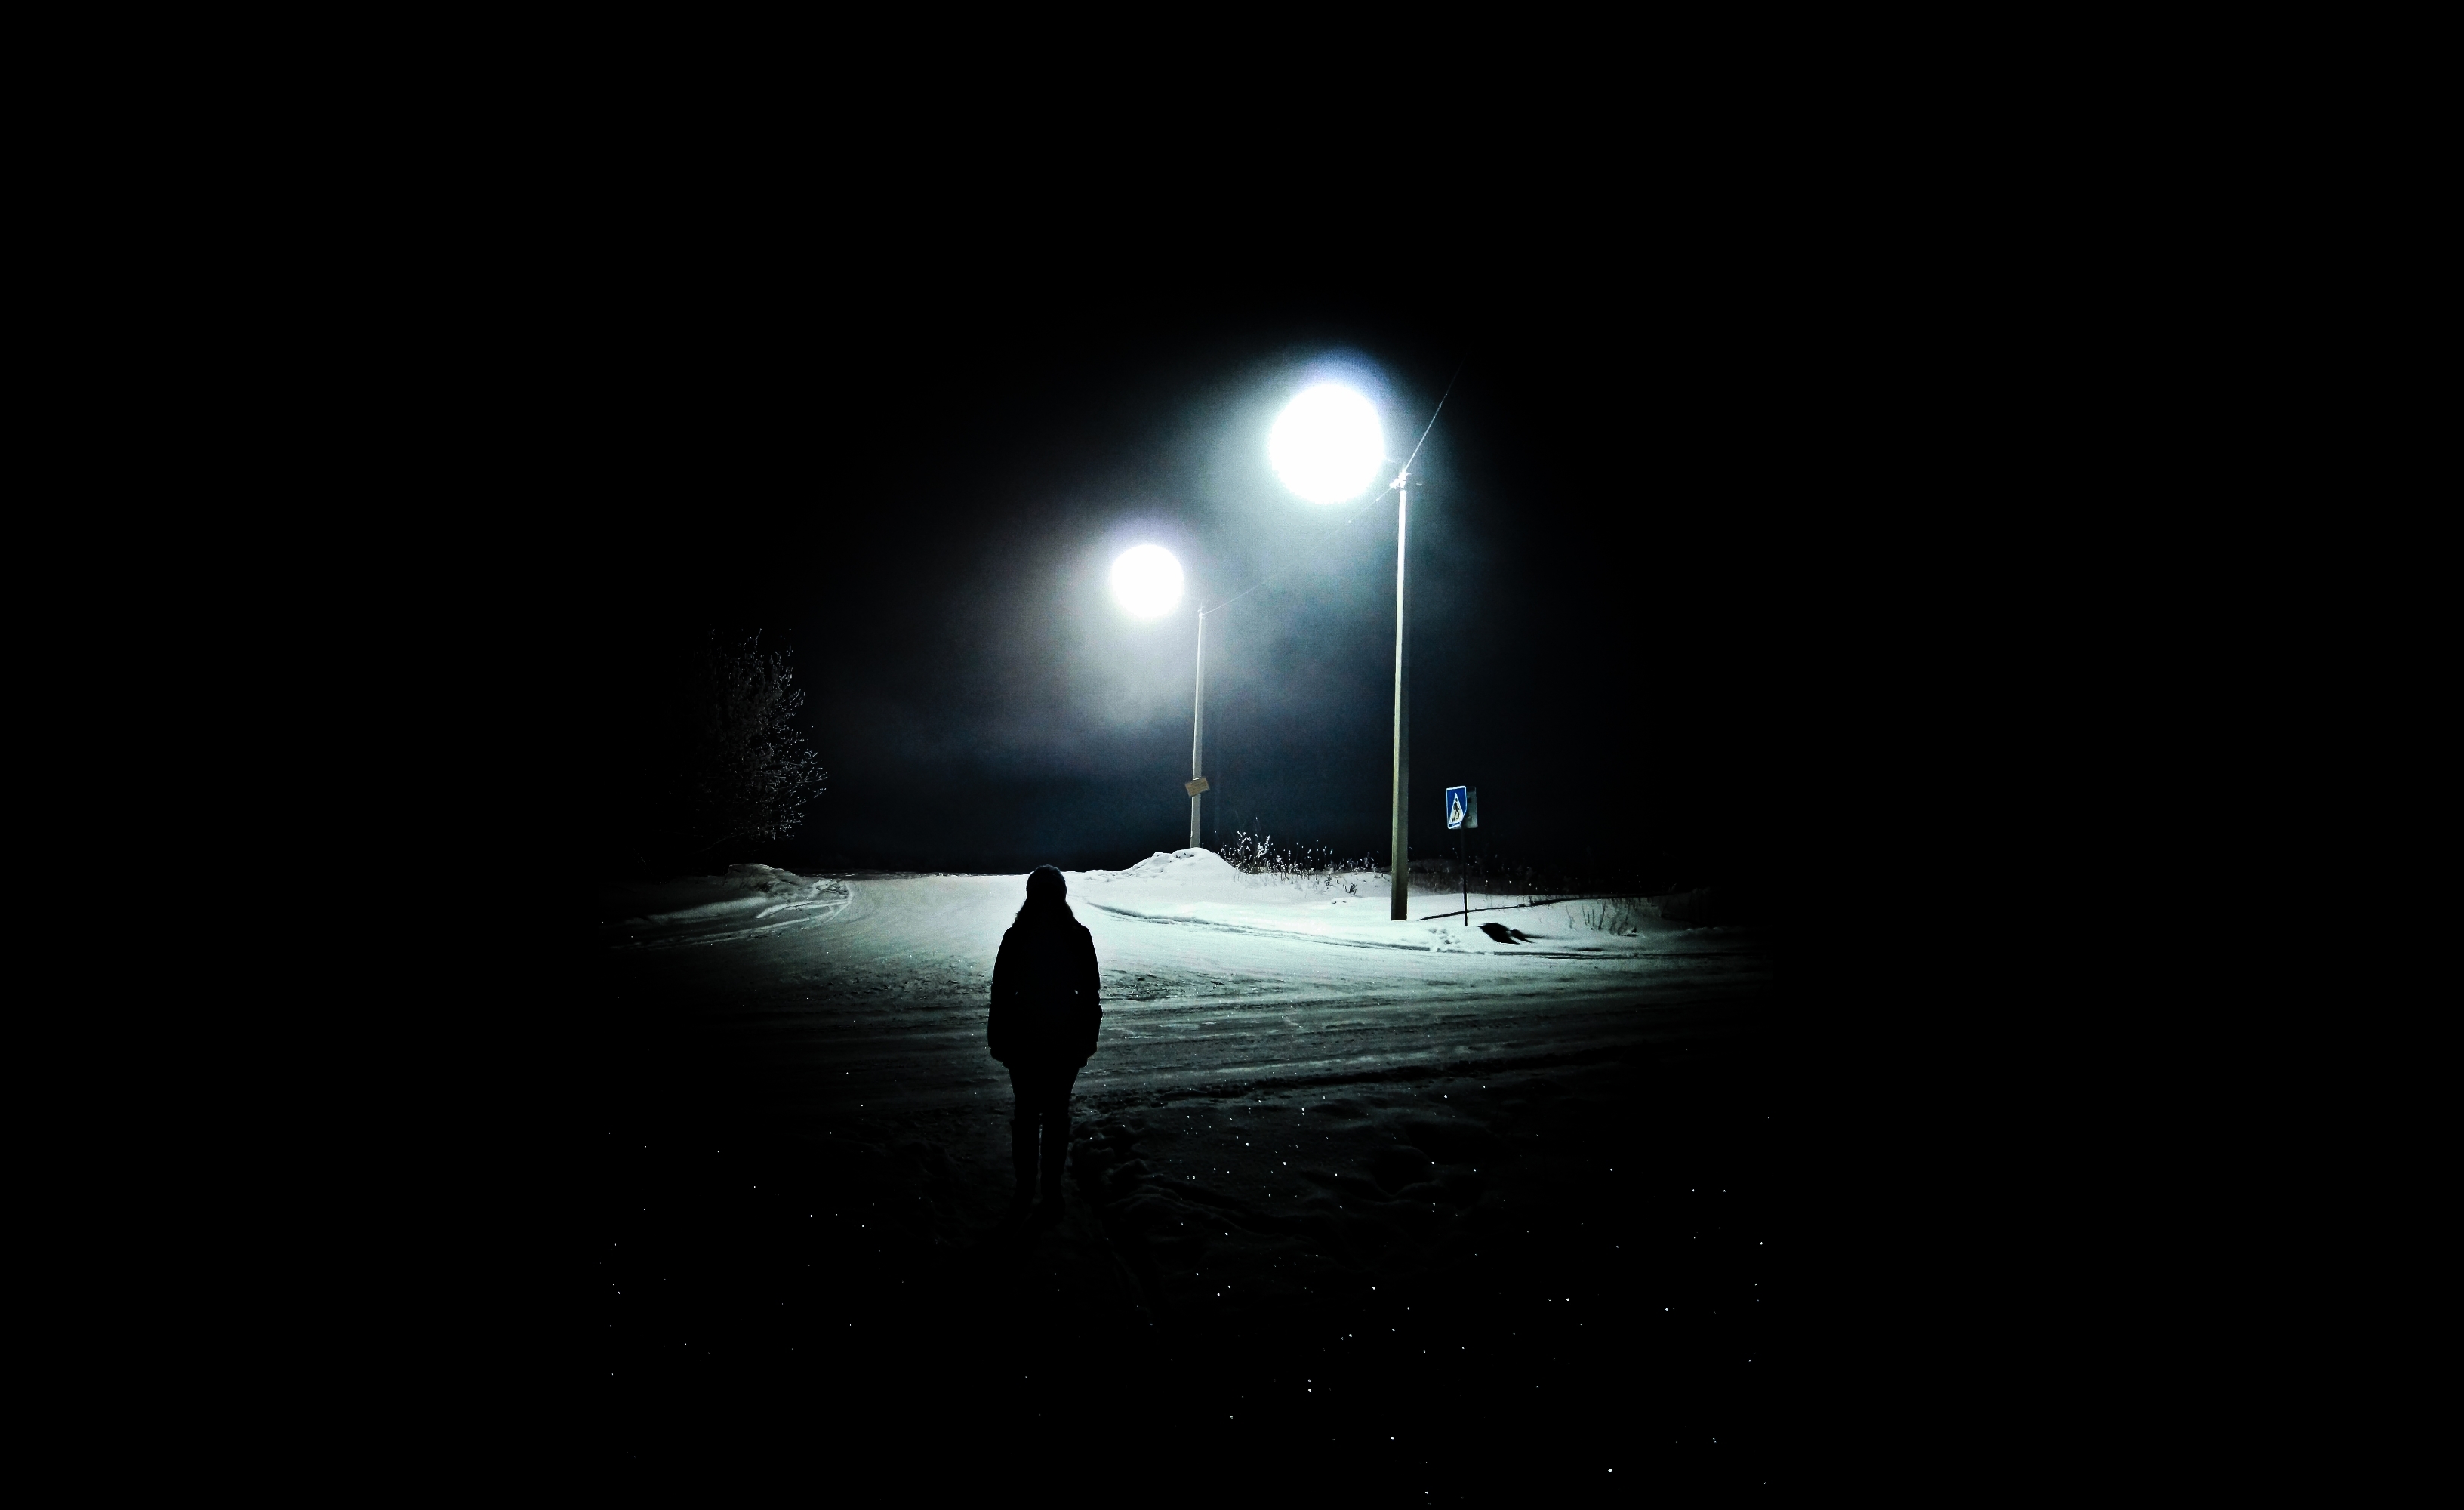 Слушать во тьме и мраке наша жизнь. Одиночество в ночи. Зима одиночество. Одинокий фонарь в ночи. Это одиночество.